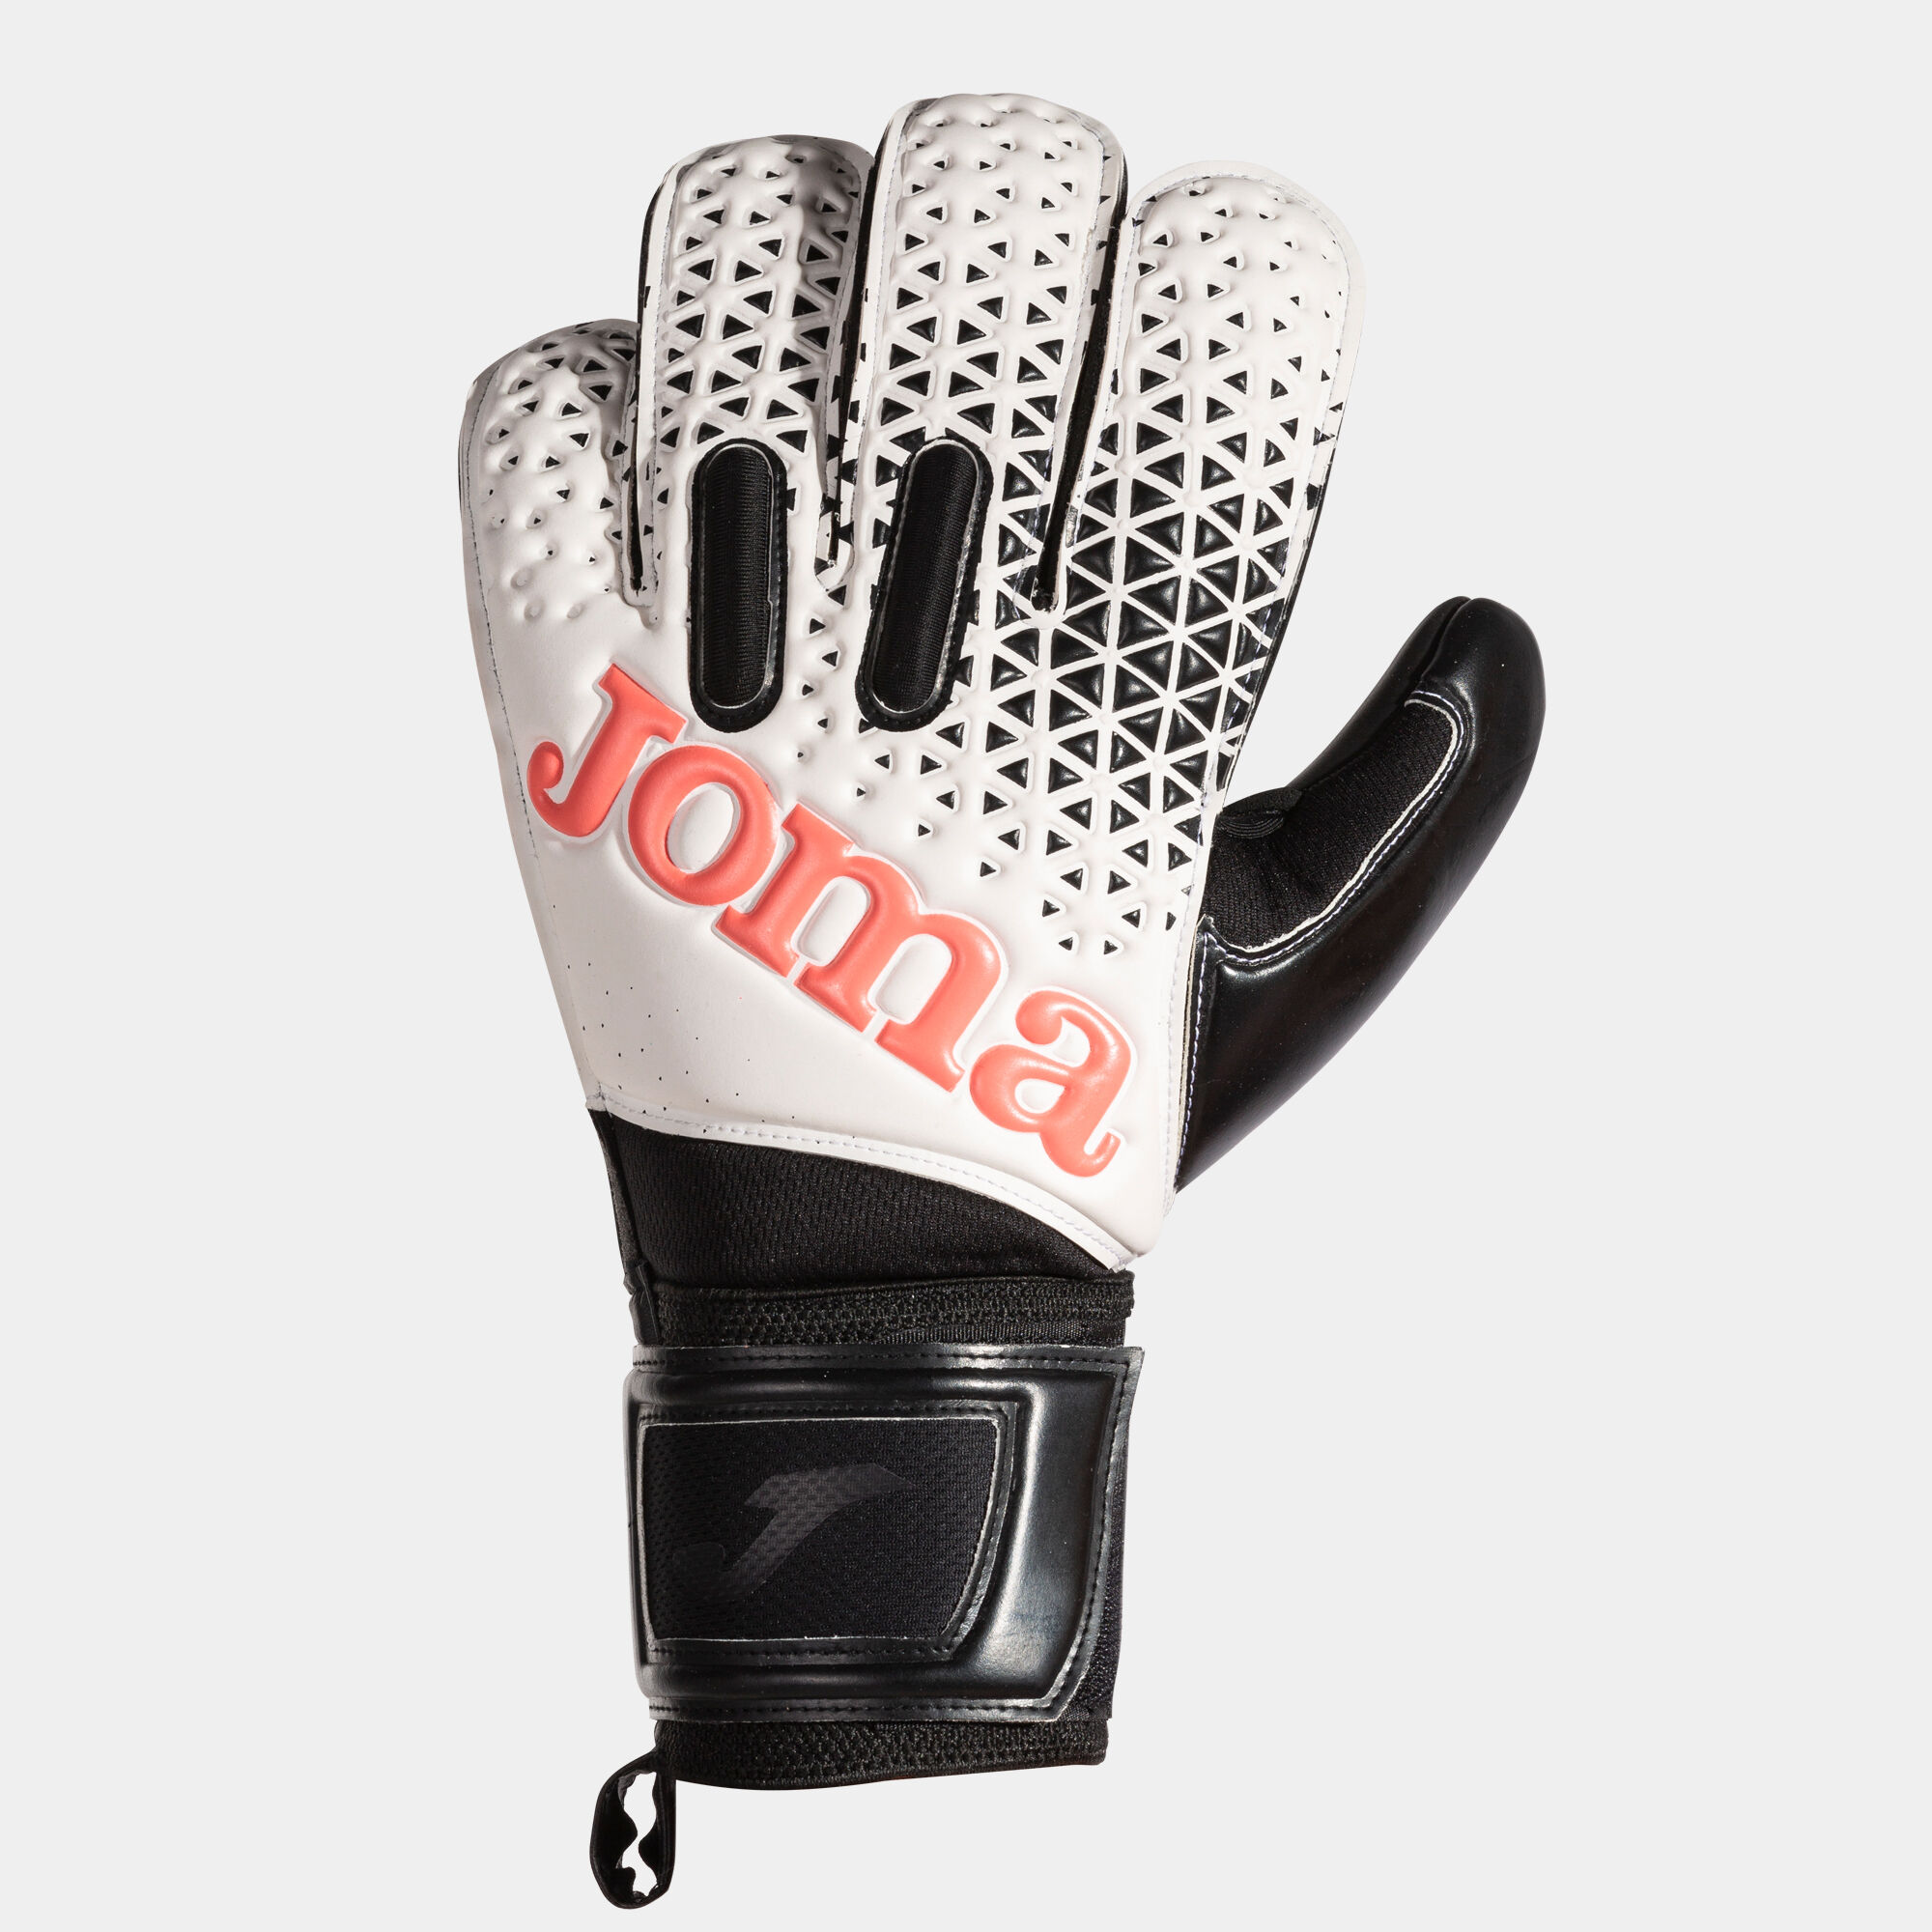 Luvas de guarda-redes futebol Premier branco preto coral fluorescente